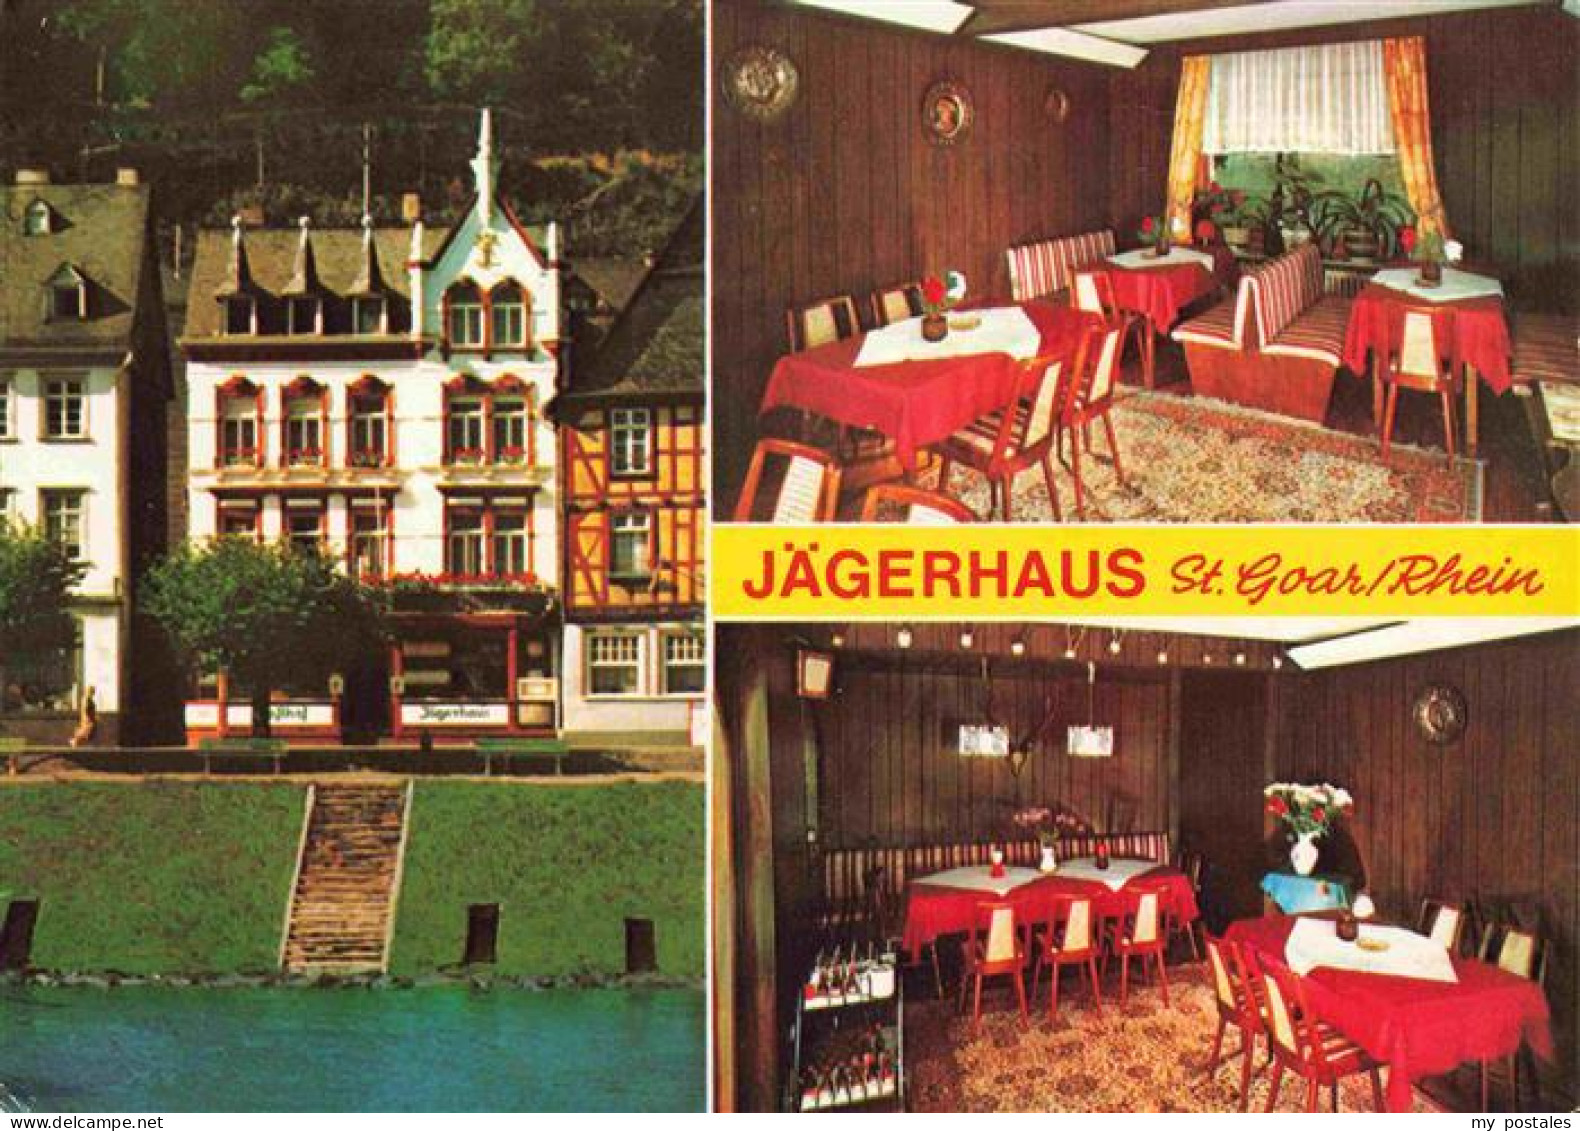 73969490 St_Goar_Rhein Hotel Jaegerhaus Restaurant - St. Goar